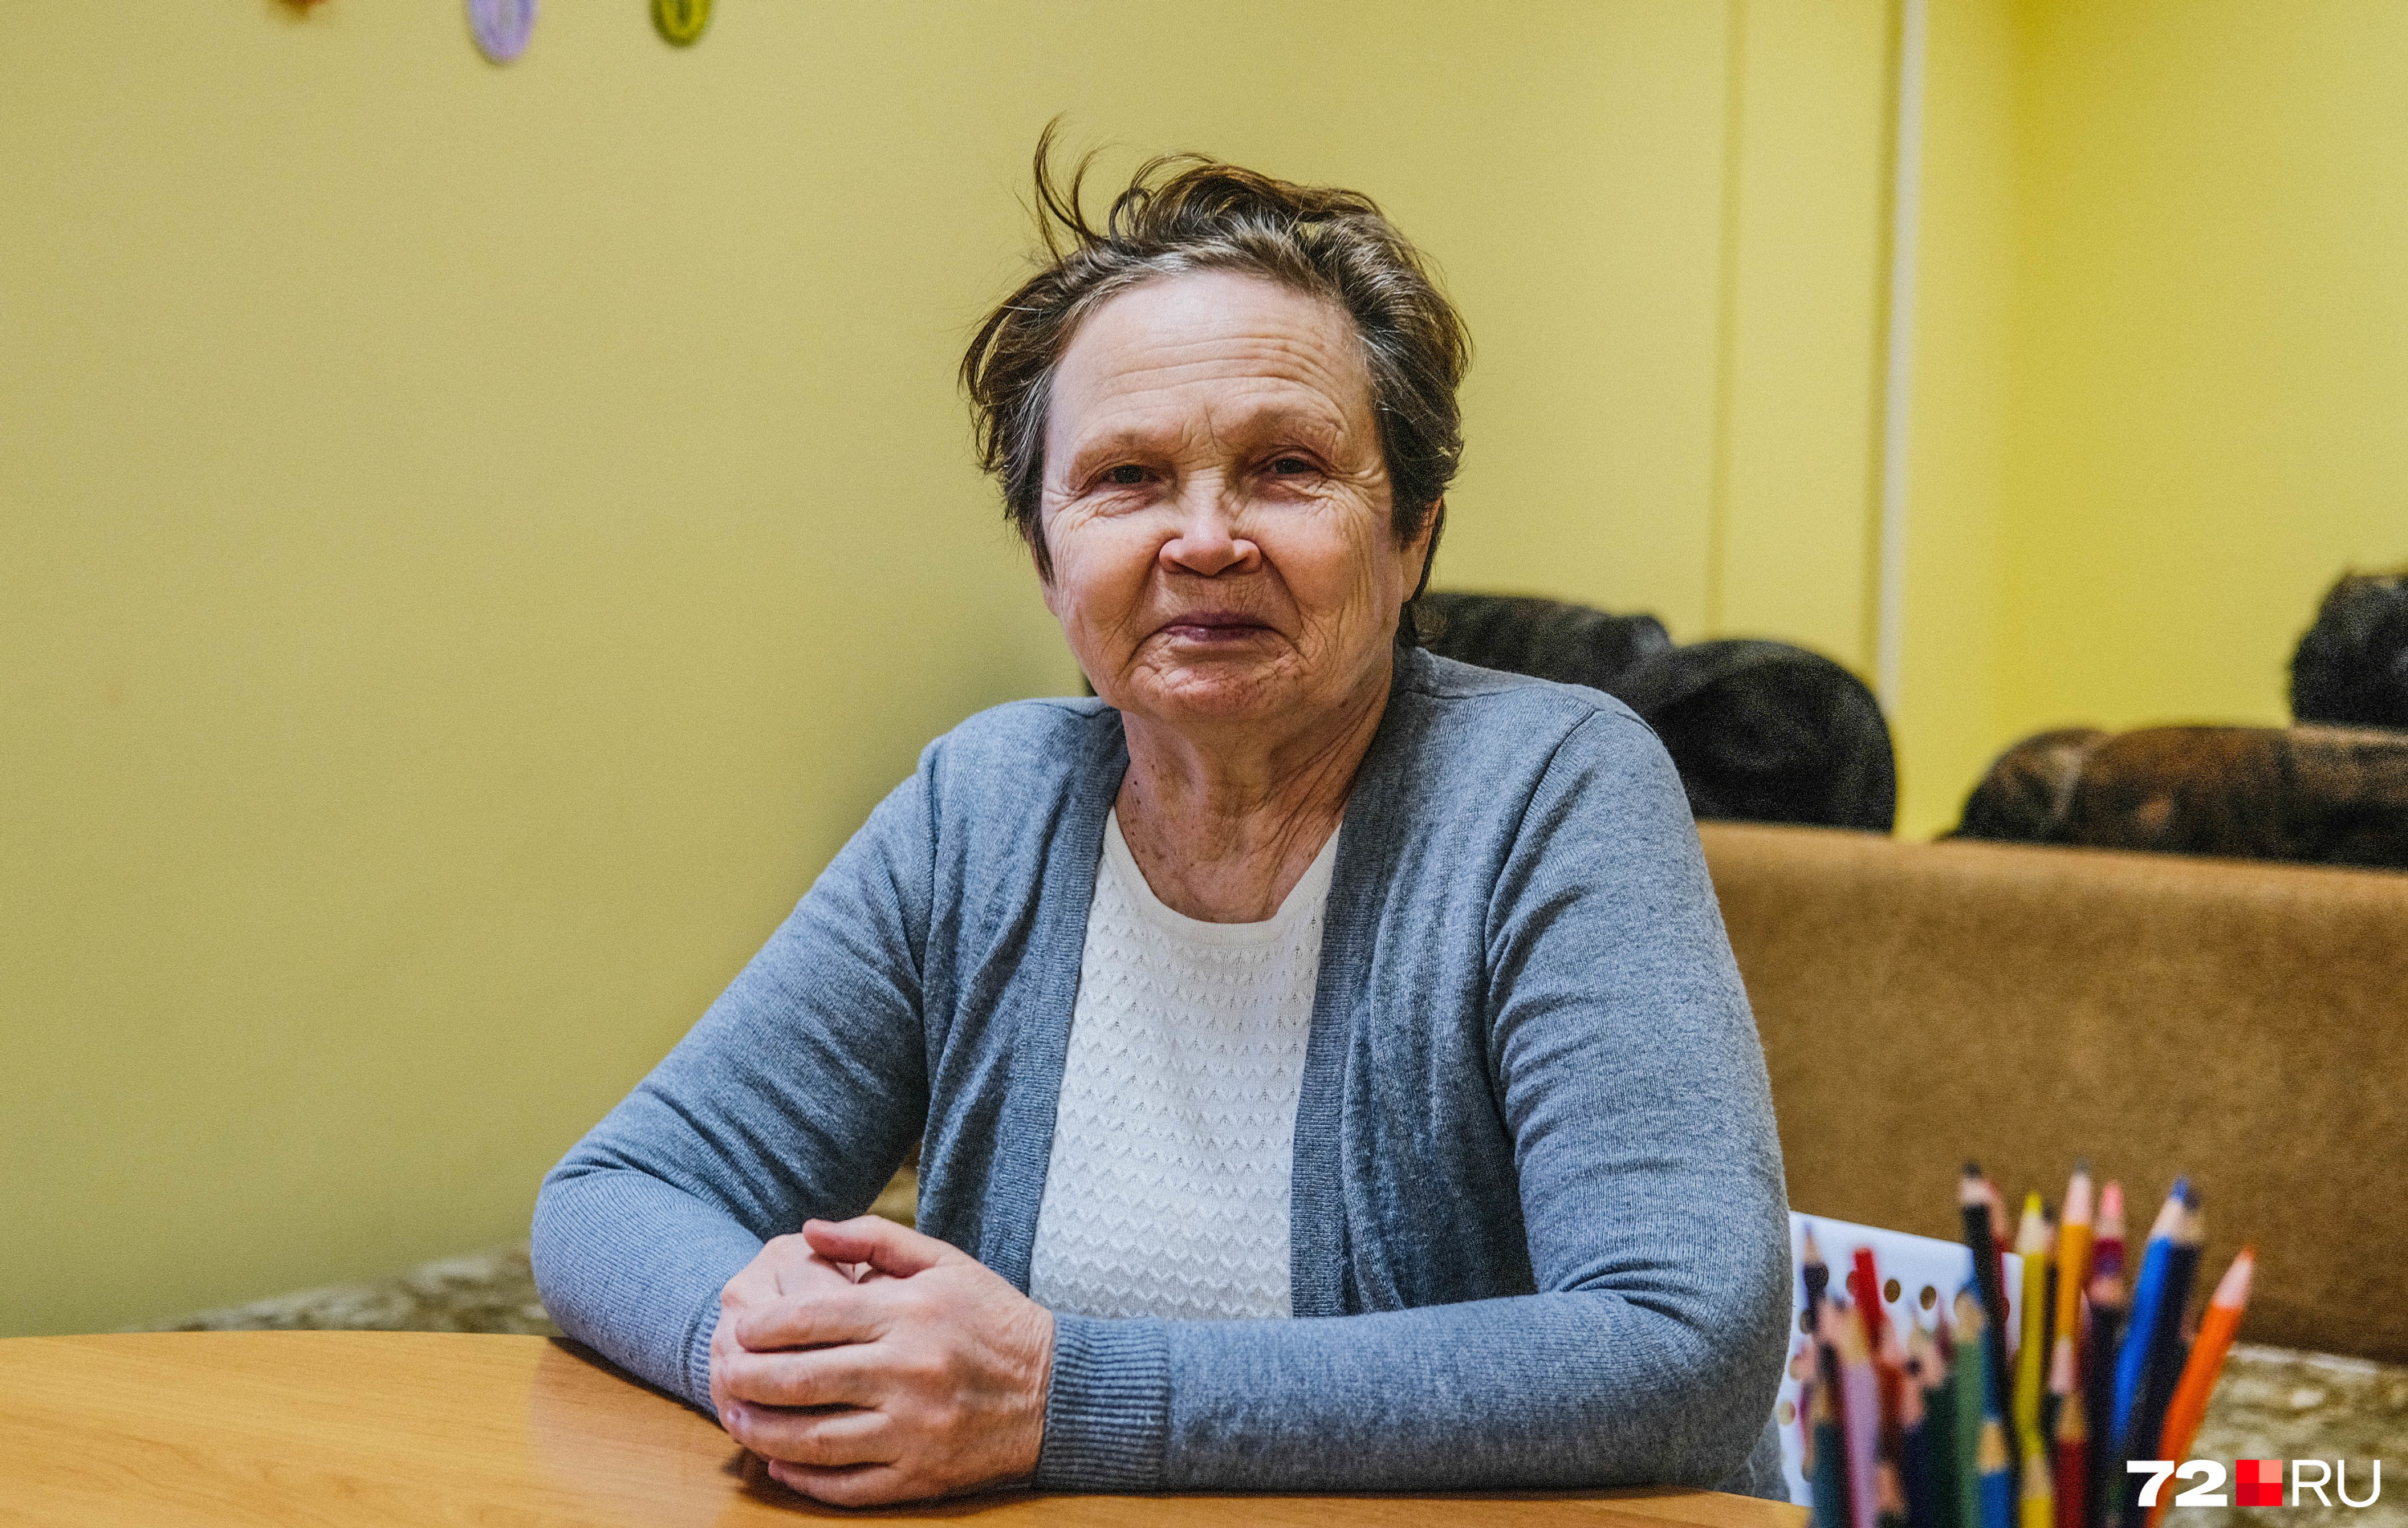 Свежие вакансии в екатеринбурге для женщин пенсионеров